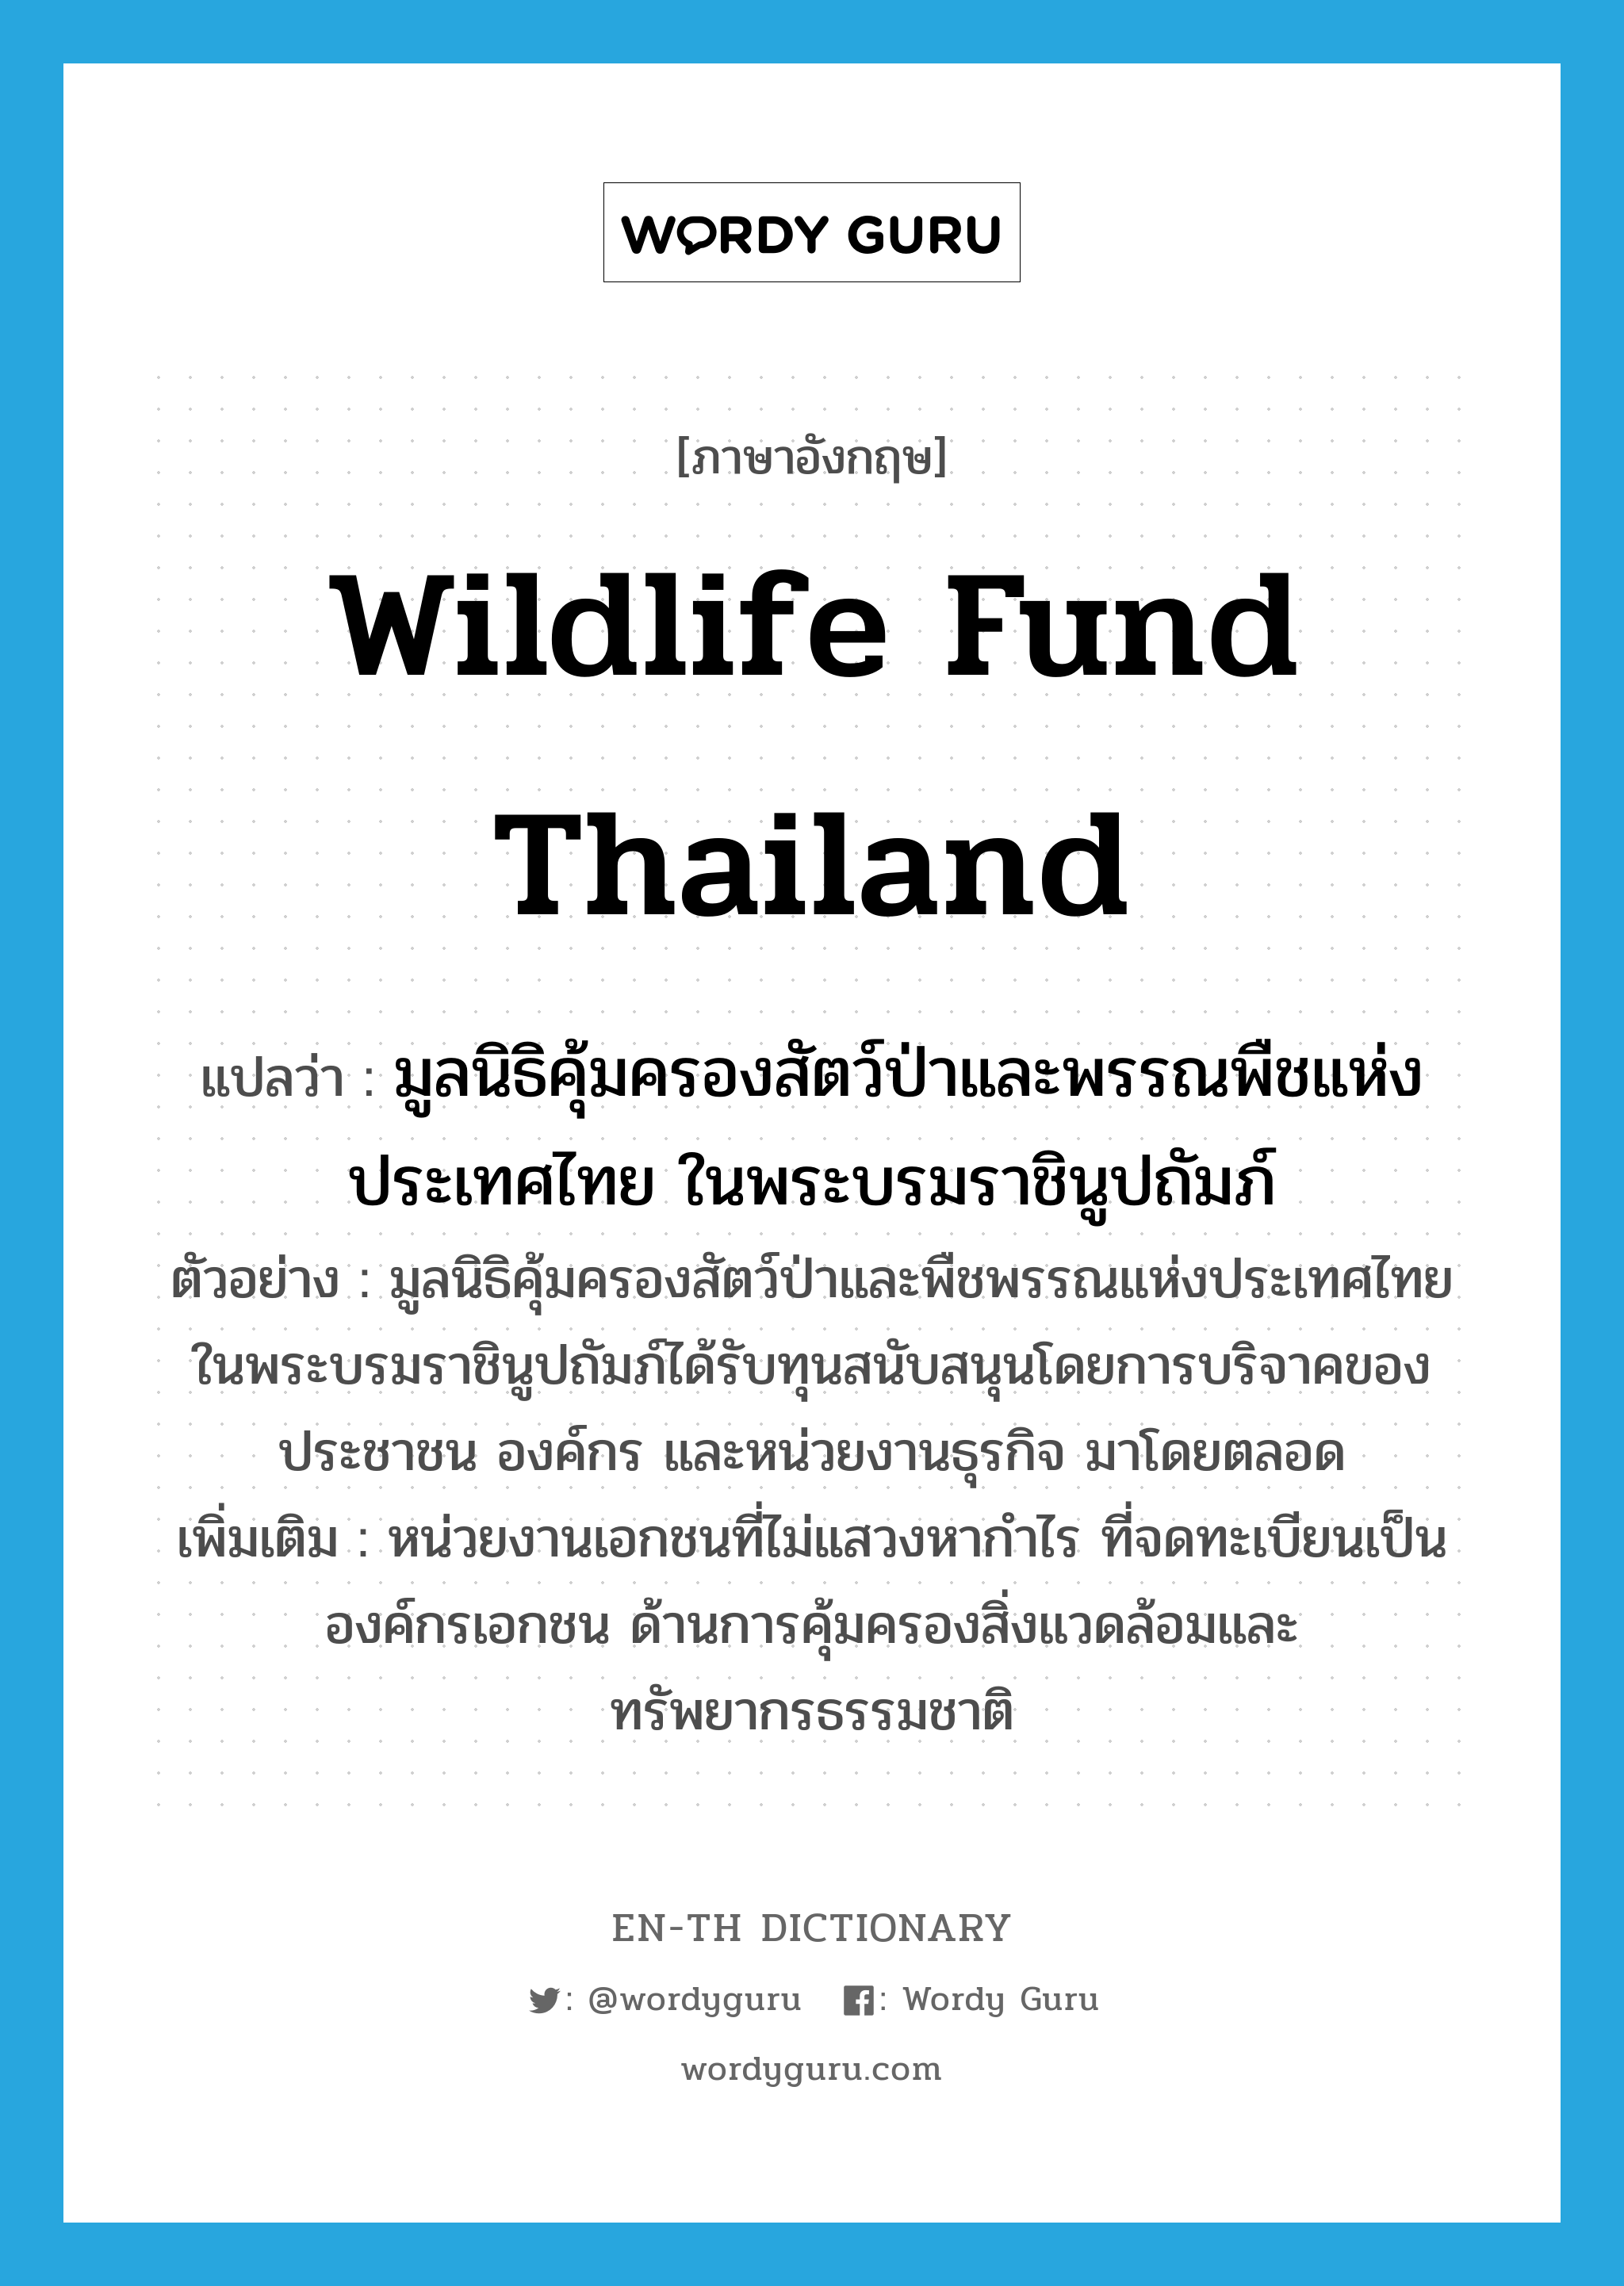 มูลนิธิคุ้มครองสัตว์ป่าและพรรณพืชแห่งประเทศไทย ในพระบรมราชินูปถัมภ์ ภาษาอังกฤษ?, คำศัพท์ภาษาอังกฤษ มูลนิธิคุ้มครองสัตว์ป่าและพรรณพืชแห่งประเทศไทย ในพระบรมราชินูปถัมภ์ แปลว่า Wildlife fund Thailand ประเภท N ตัวอย่าง มูลนิธิคุ้มครองสัตว์ป่าและพืชพรรณแห่งประเทศไทย ในพระบรมราชินูปถัมภ์ได้รับทุนสนับสนุนโดยการบริจาคของประชาชน องค์กร และหน่วยงานธุรกิจ มาโดยตลอด เพิ่มเติม หน่วยงานเอกชนที่ไม่แสวงหากำไร ที่จดทะเบียนเป็นองค์กรเอกชน ด้านการคุ้มครองสิ่งแวดล้อมและทรัพยากรธรรมชาติ หมวด N